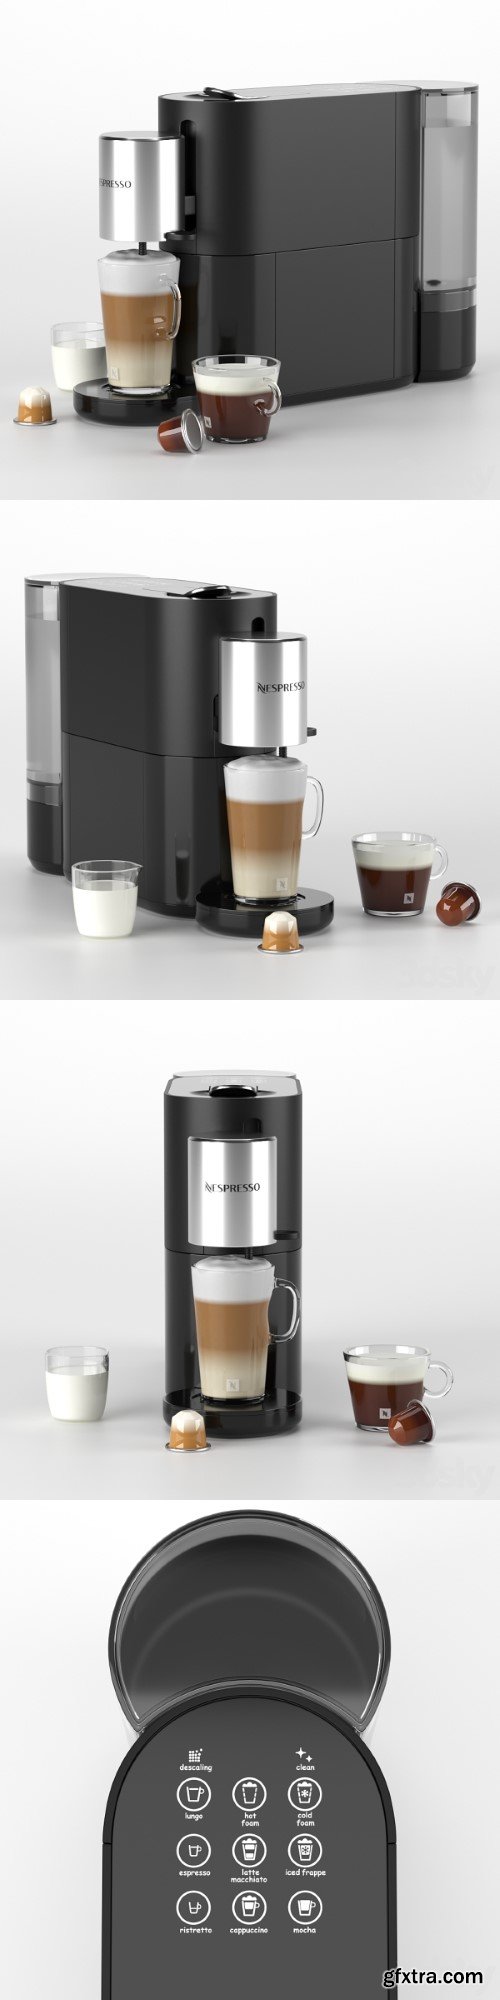 Nespresso Atelier coffee machine